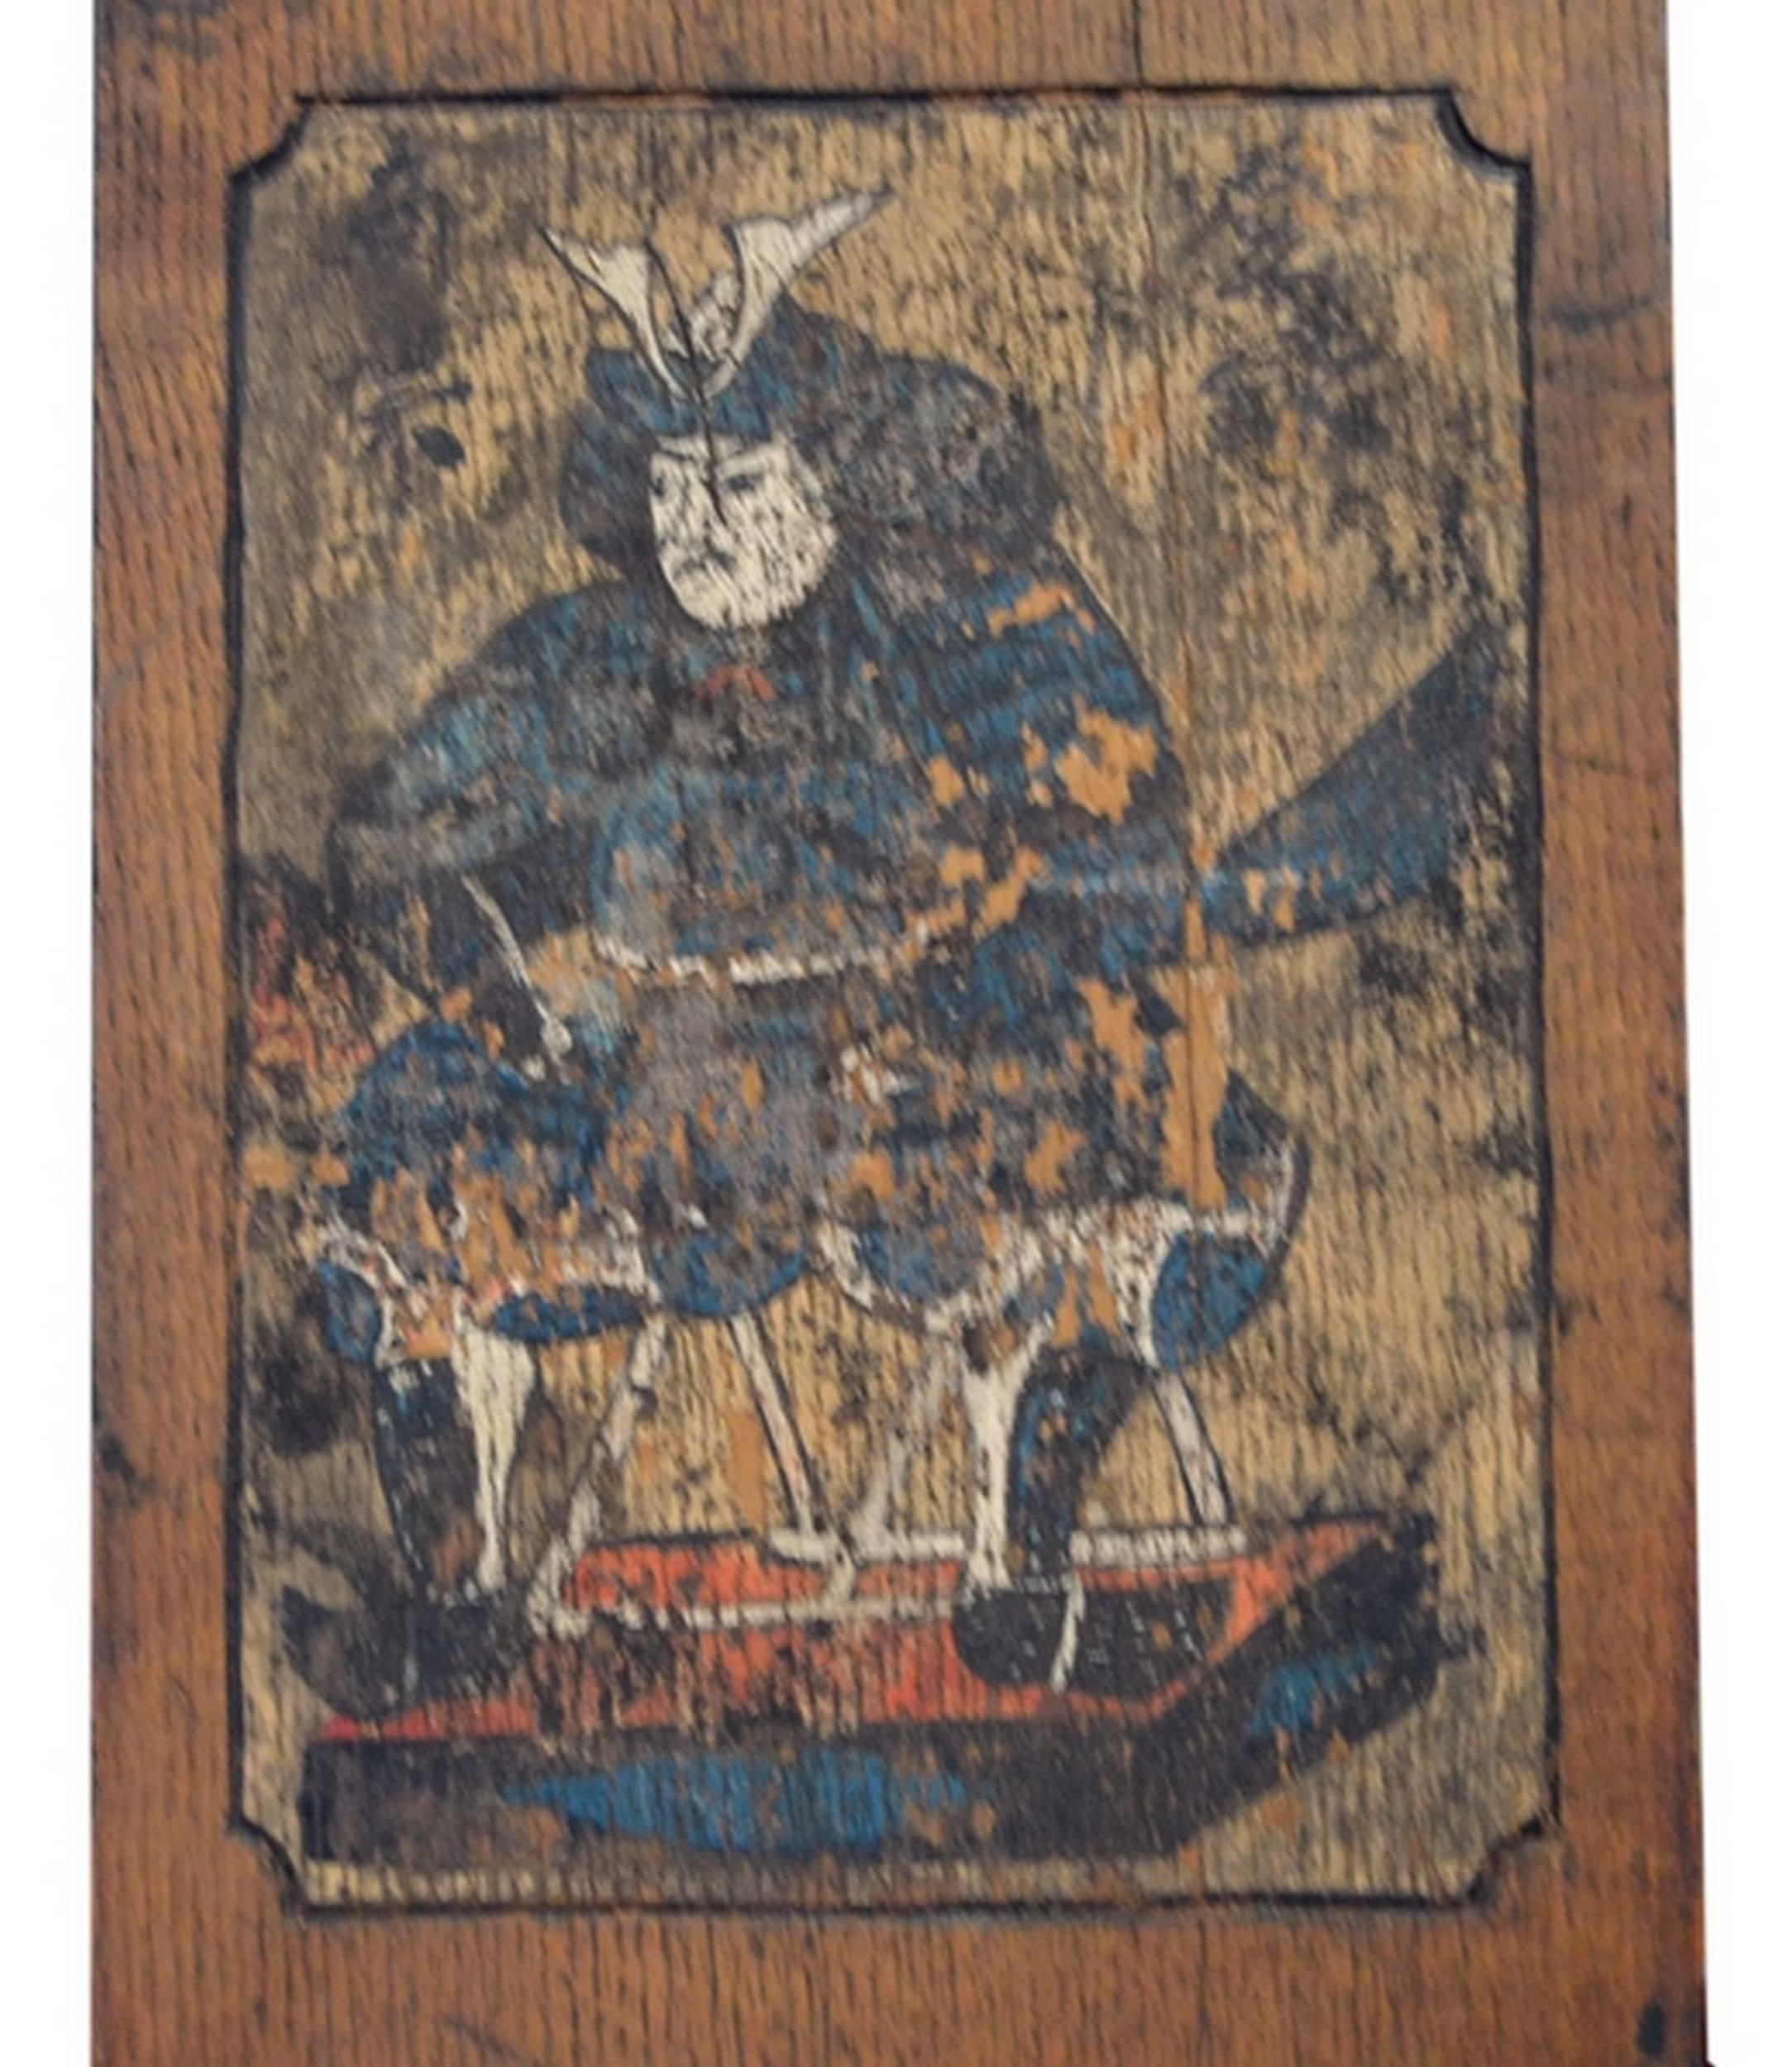 Ein geschnitztes und bemaltes japanisches Holzschild mit einem Samurai aus der Meiji-Zeit, 19. Jahrhundert. Dieses Schild mit einem Samurai aus dem 19. Jahrhundert wurde in Japan während der Meiji-Zeit aus Holz gefertigt und bemalt. Die schmale